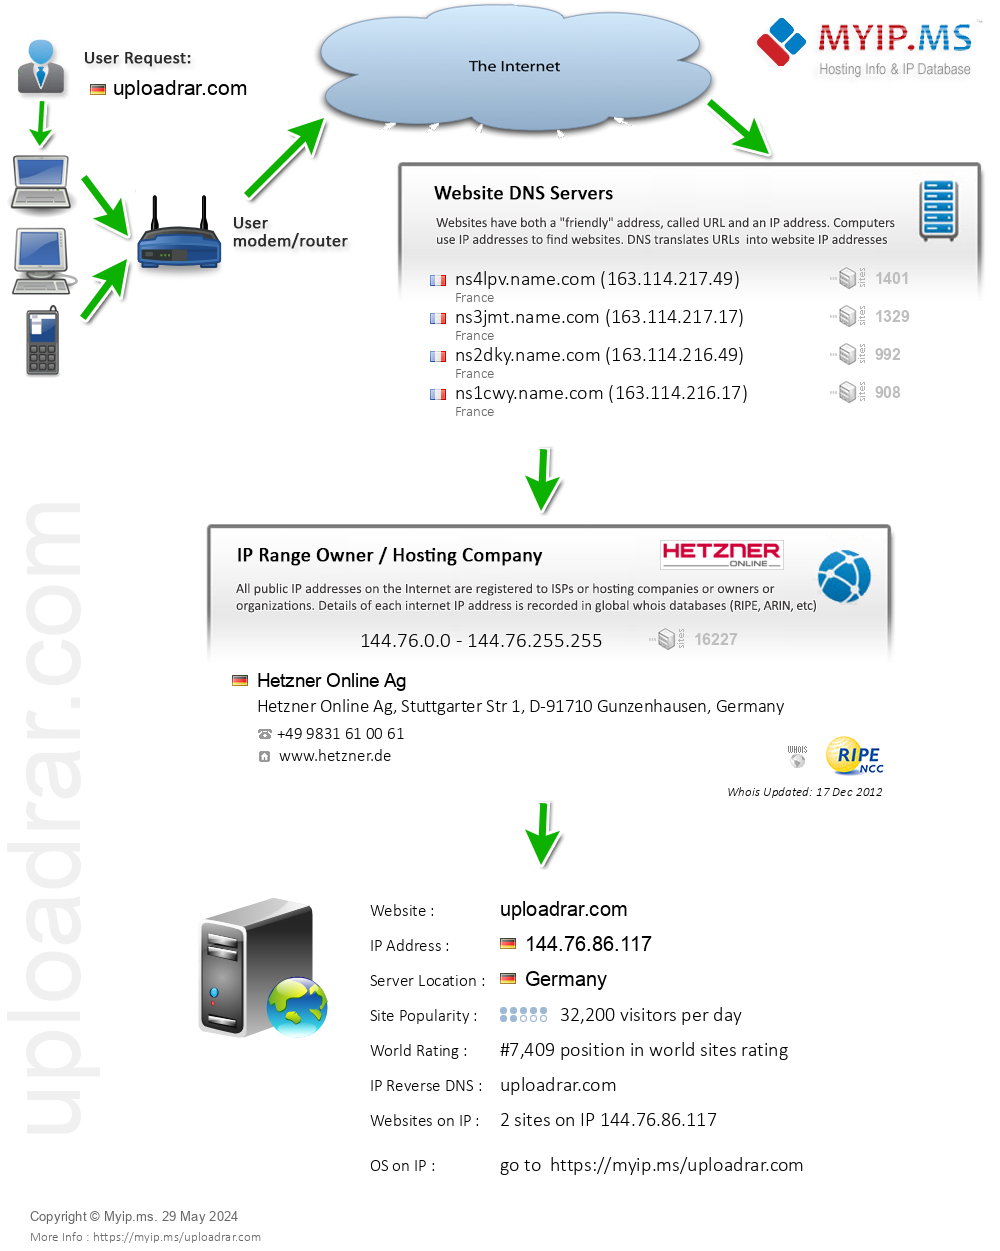 Uploadrar.com - Website Hosting Visual IP Diagram